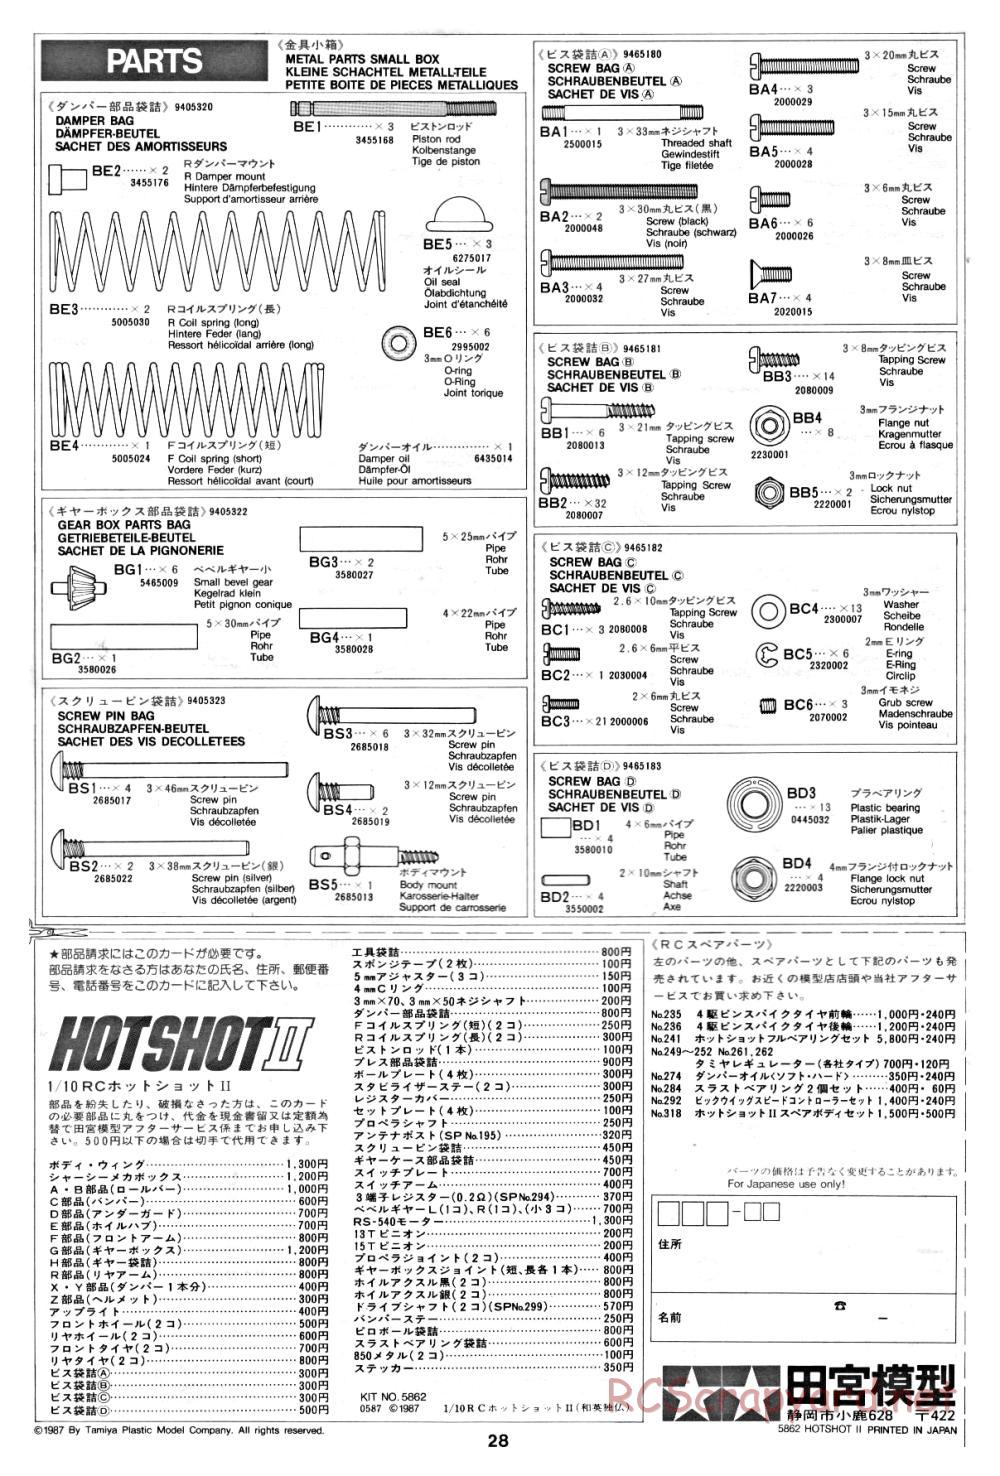 Tamiya - Hot-Shot II - 58062 - Manual - Page 28